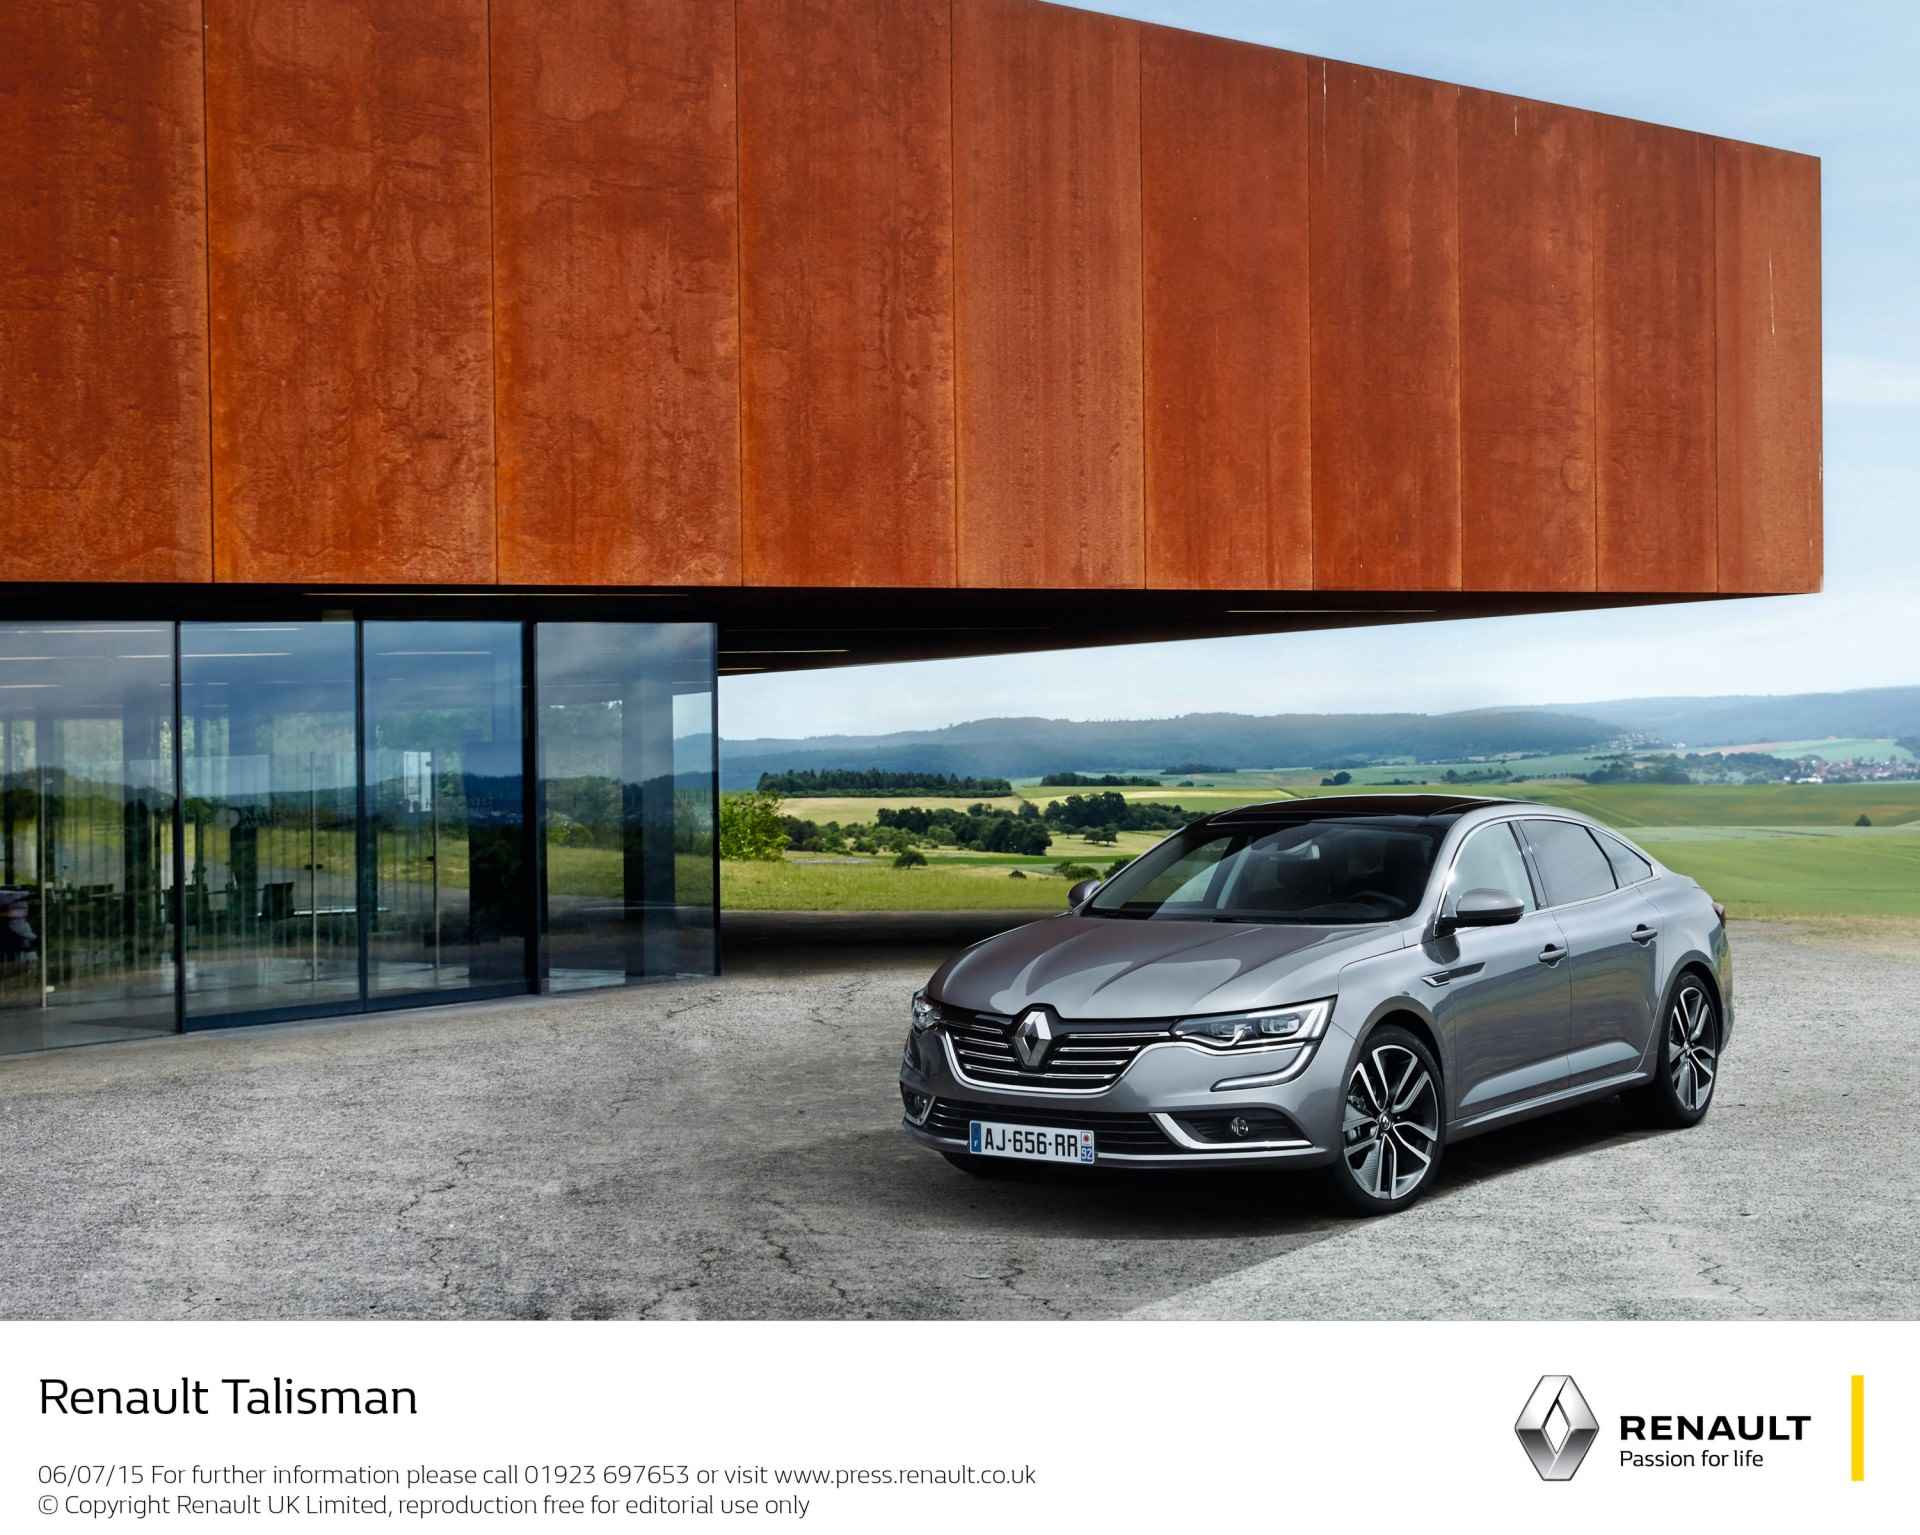 Renault Talisman (2015) przekonująca awangarda